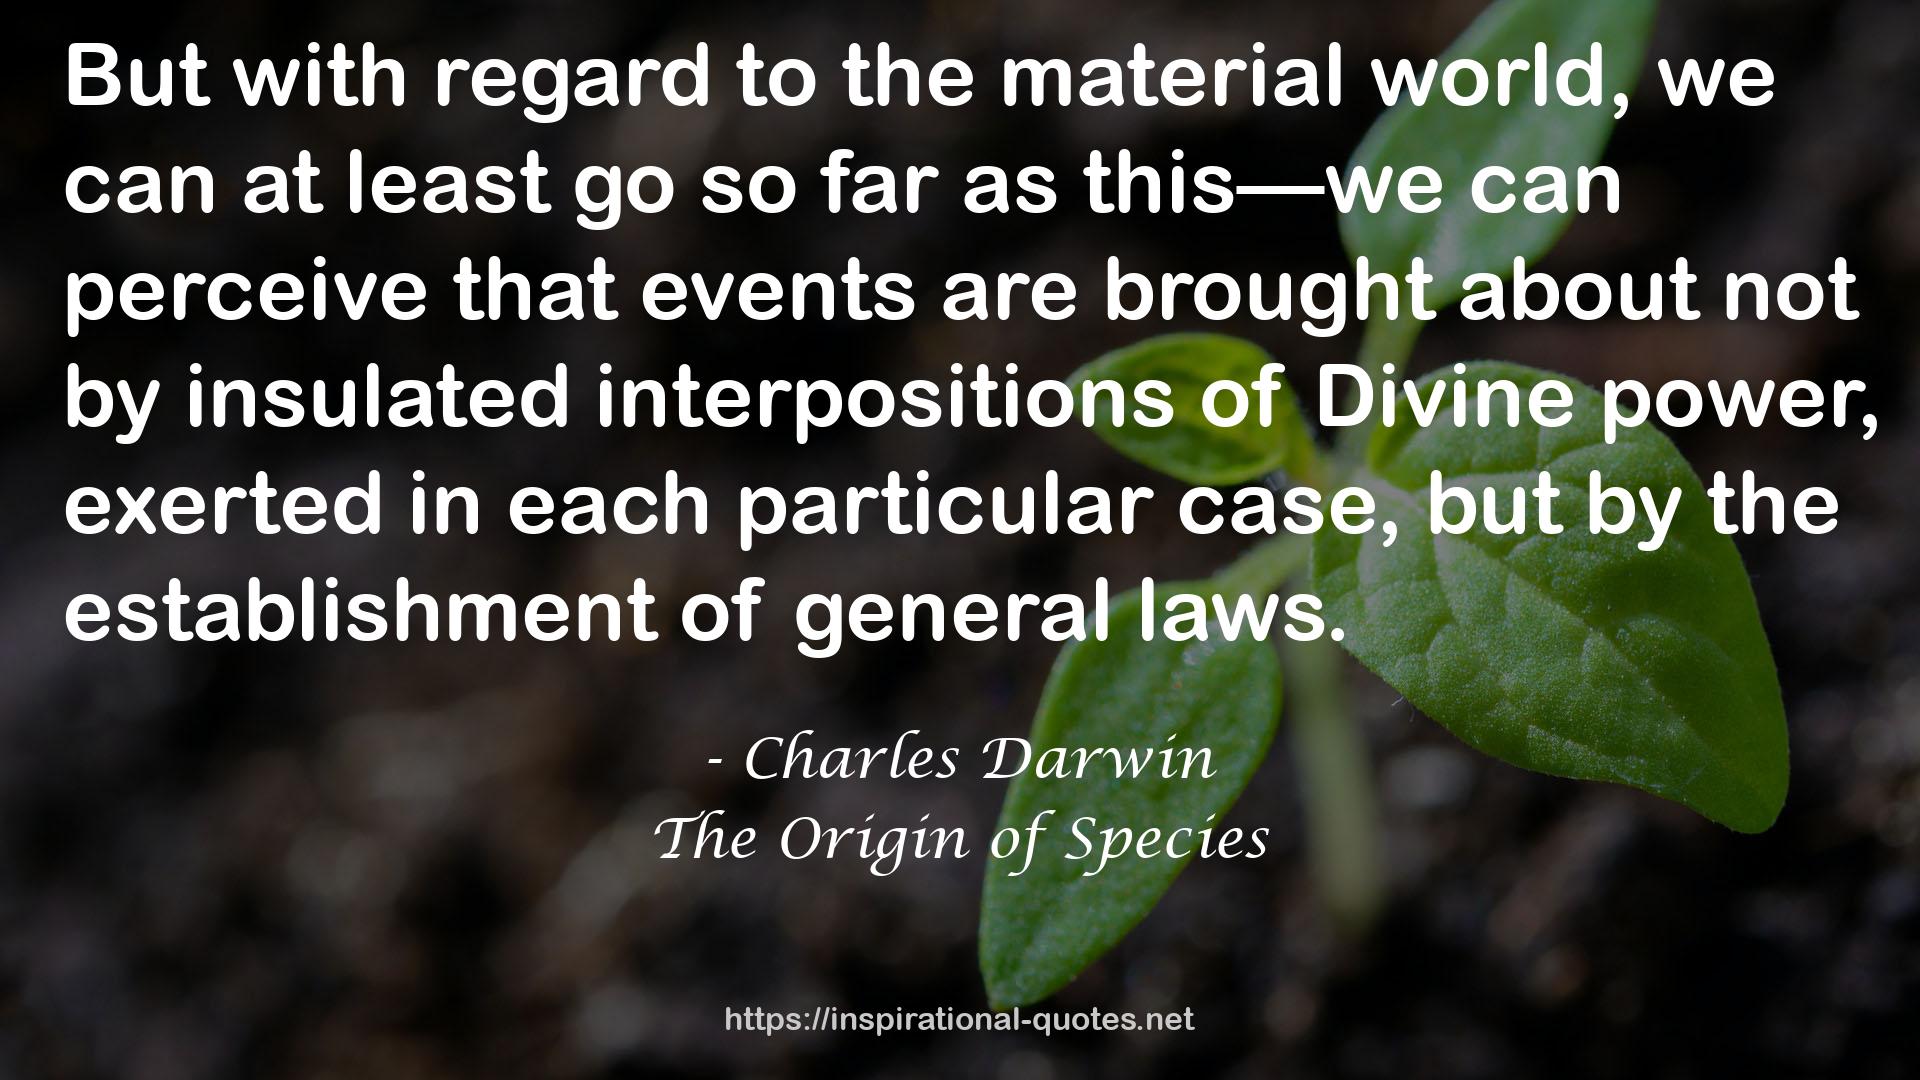 The Origin of Species QUOTES